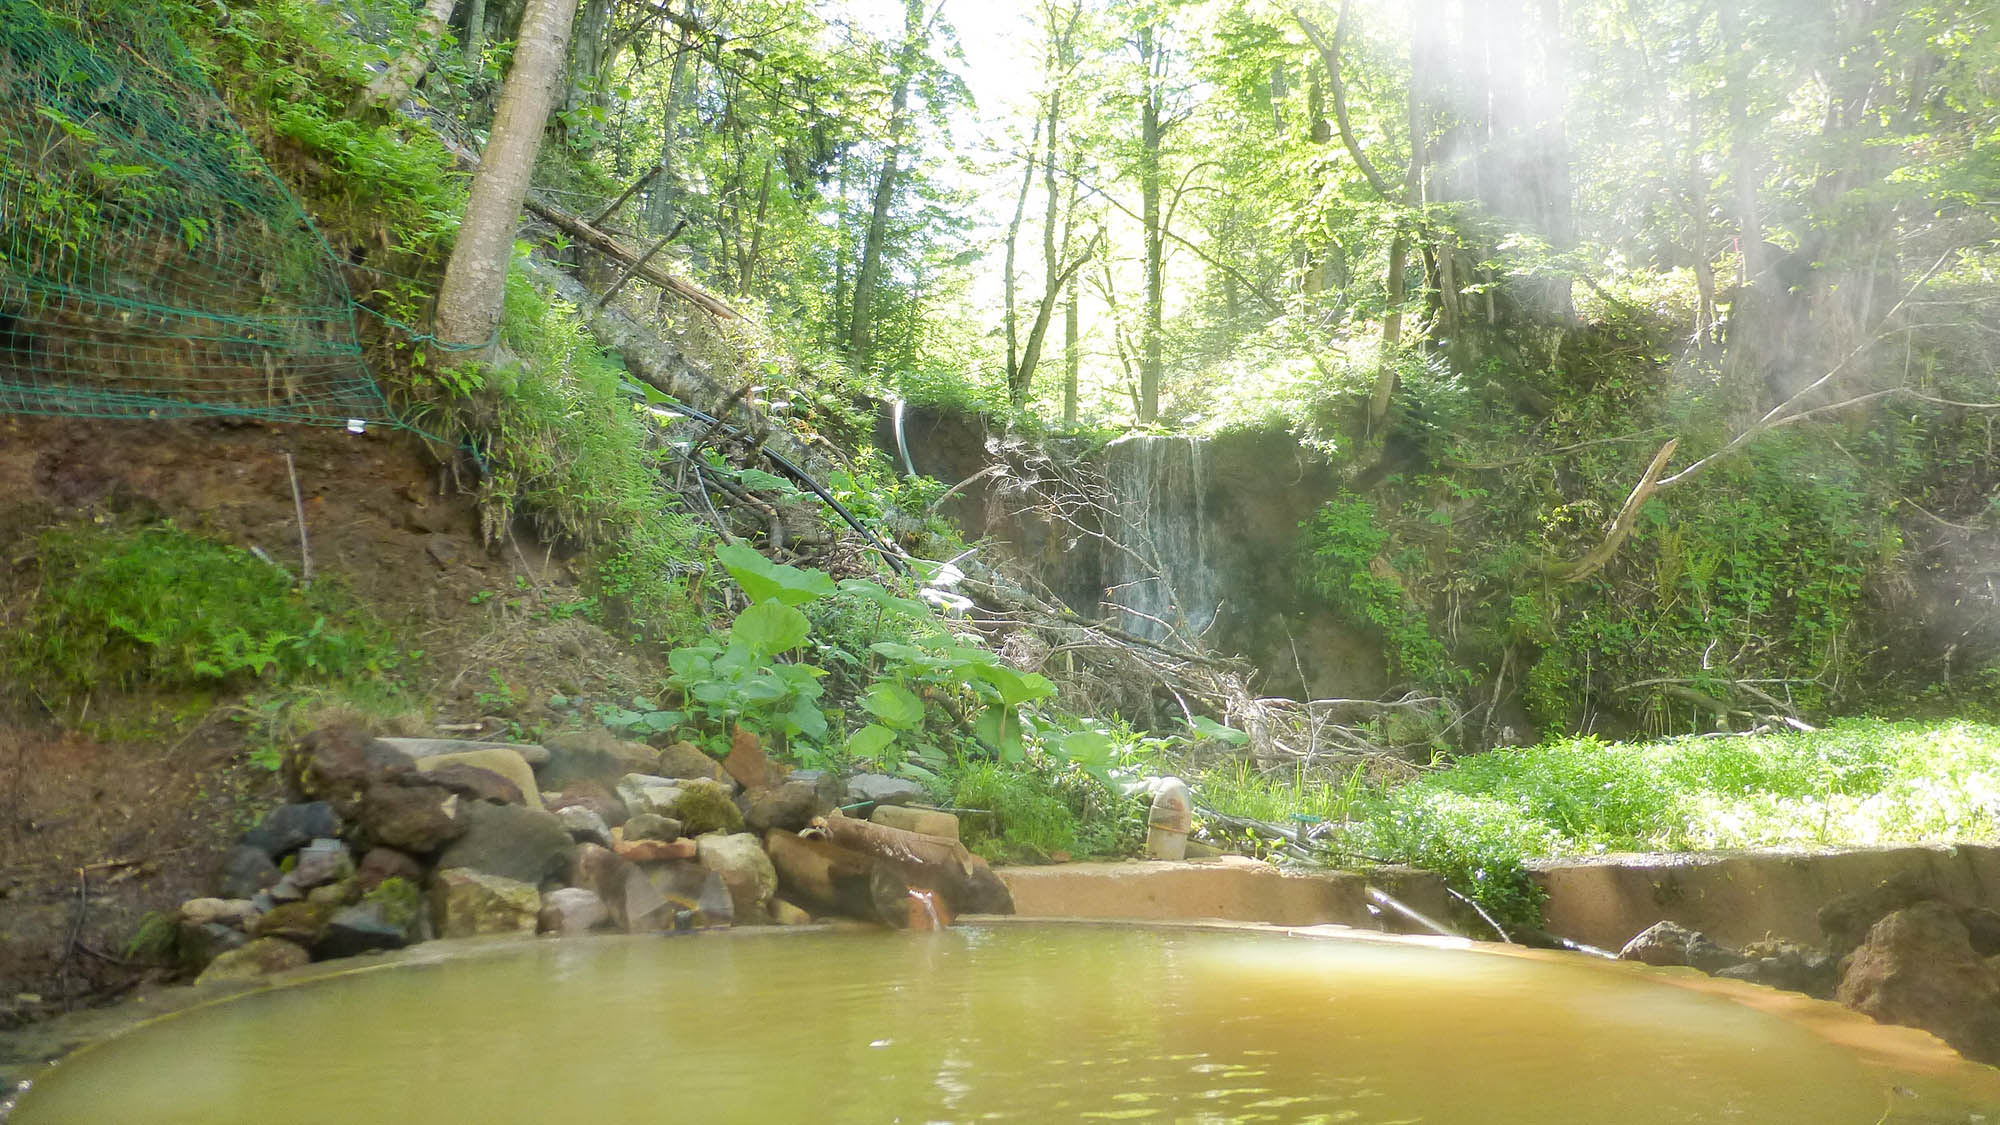 ・【幾稲鳴滝の湯】幾稲鳴滝の近くにある貸切露天風呂です